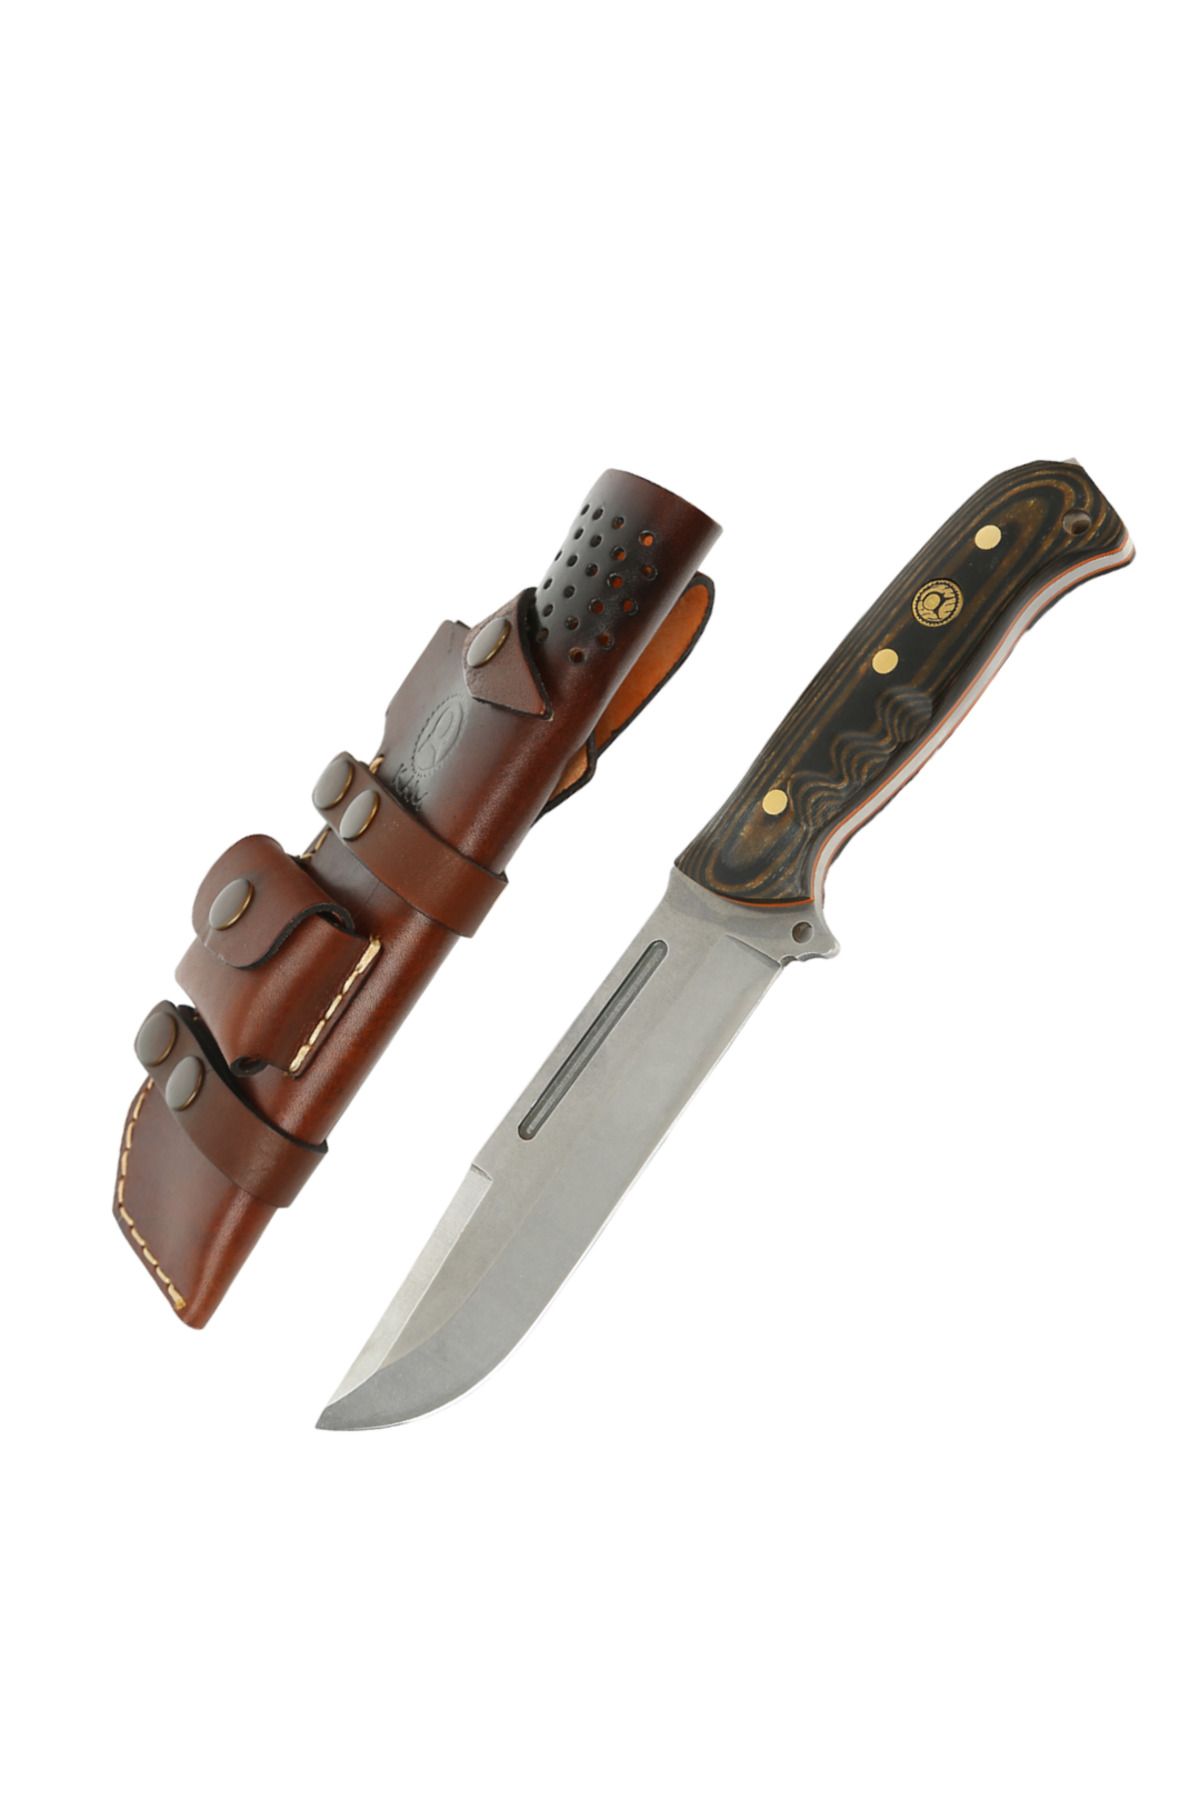 KAM KNIFE El Yapımı Çelik Kılıflı Bıçak-r45 Çelik - Tr 209 R45 Kahverengi